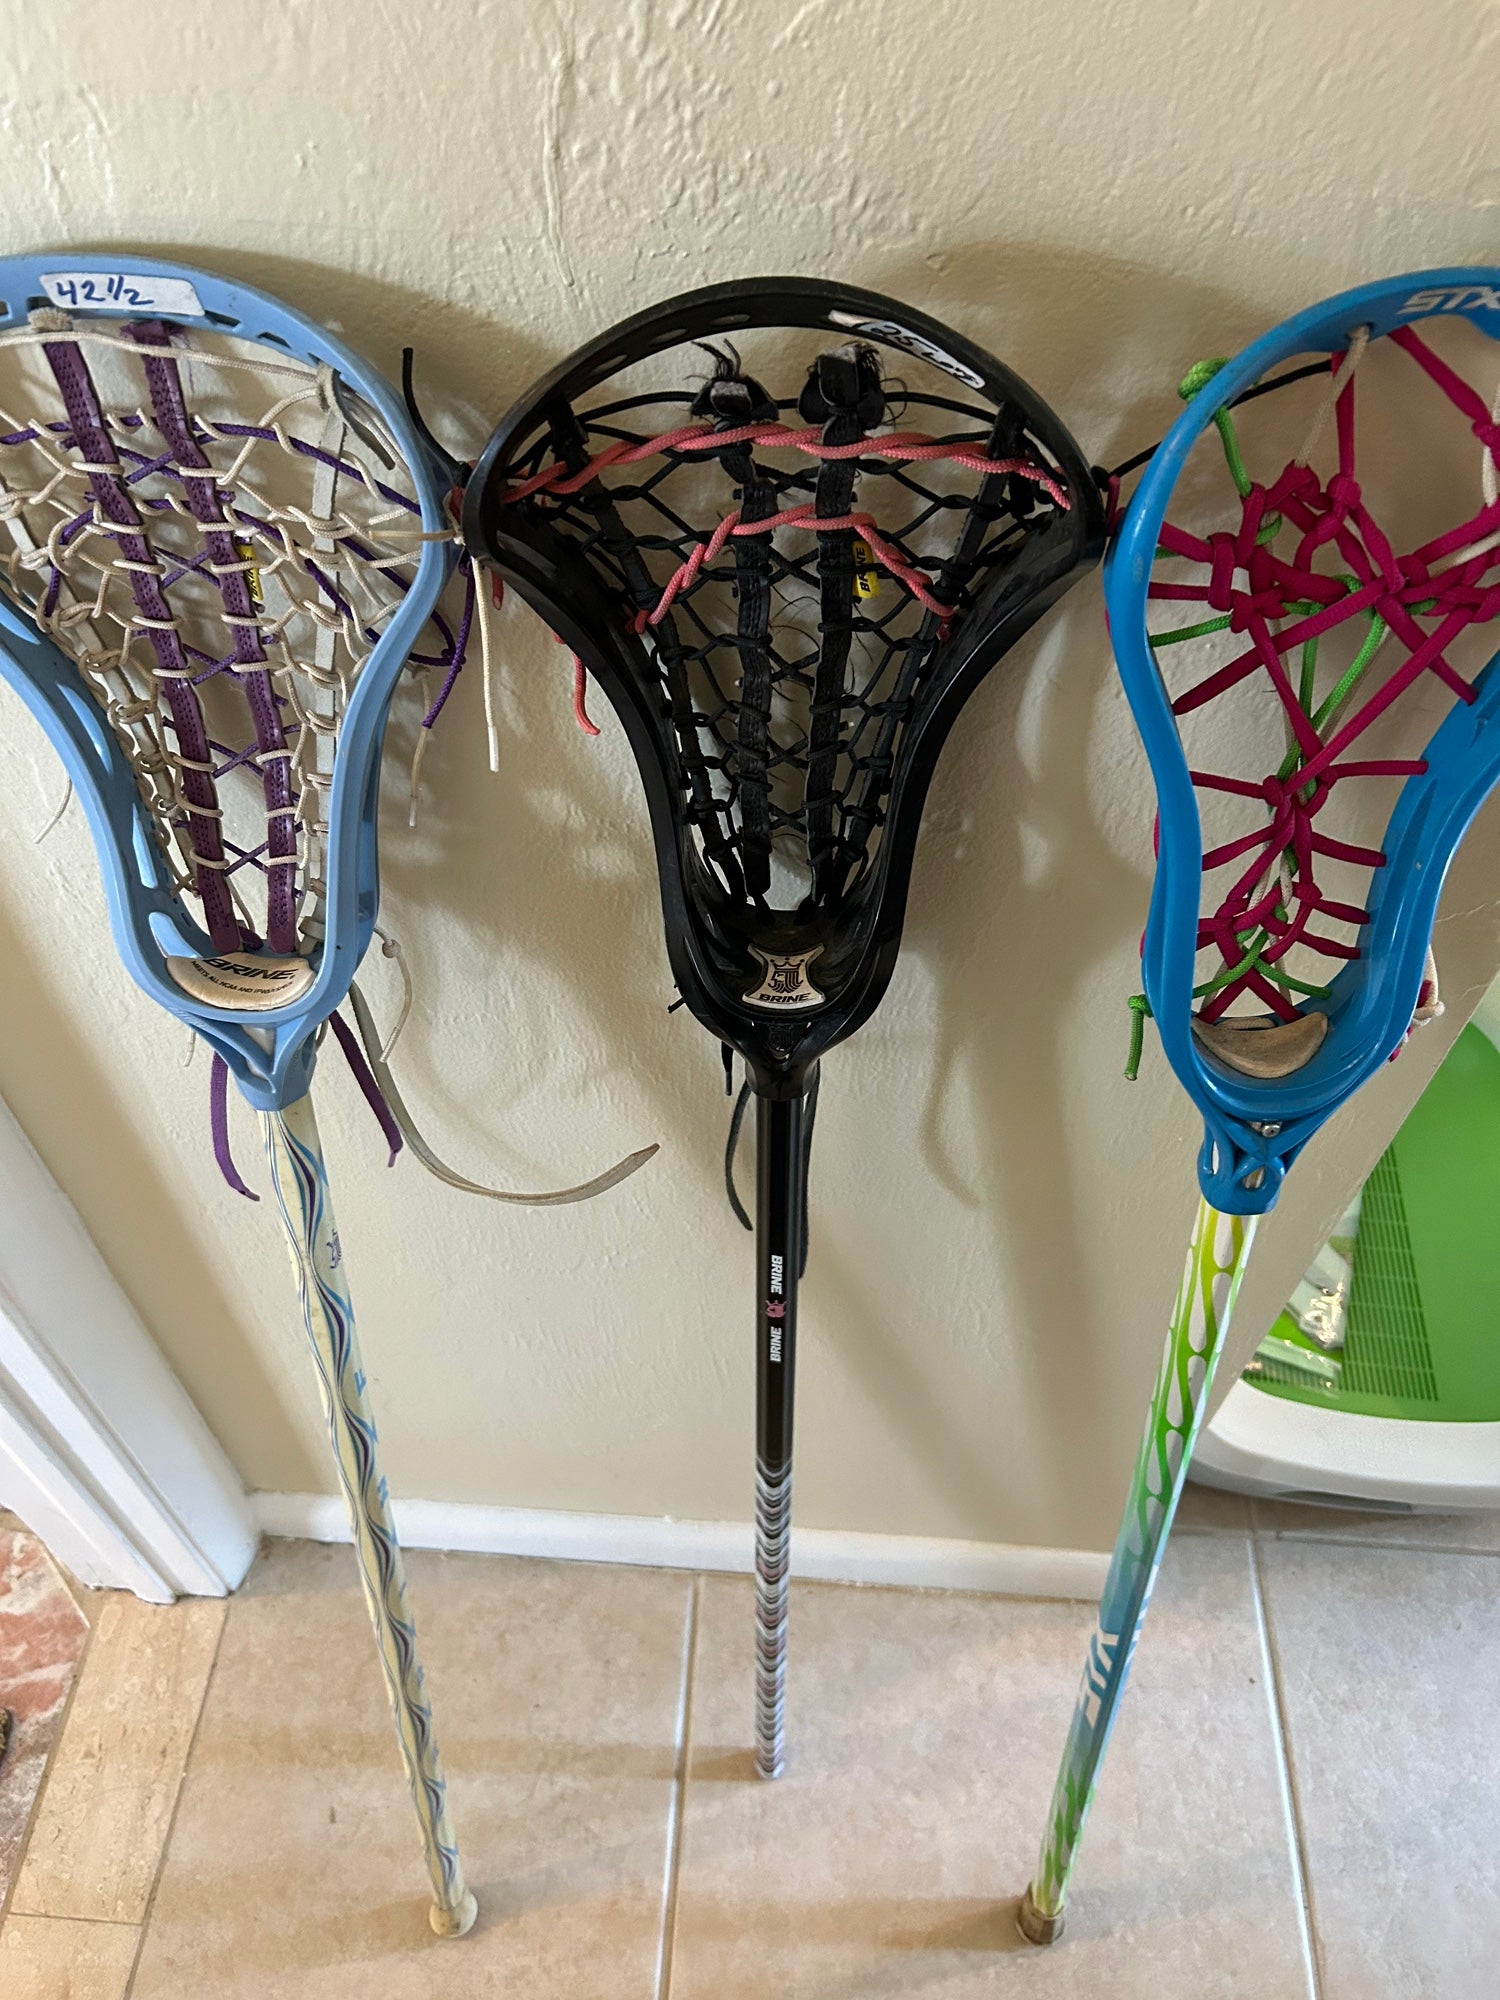 Lot of 3 women's lacrosse sticks